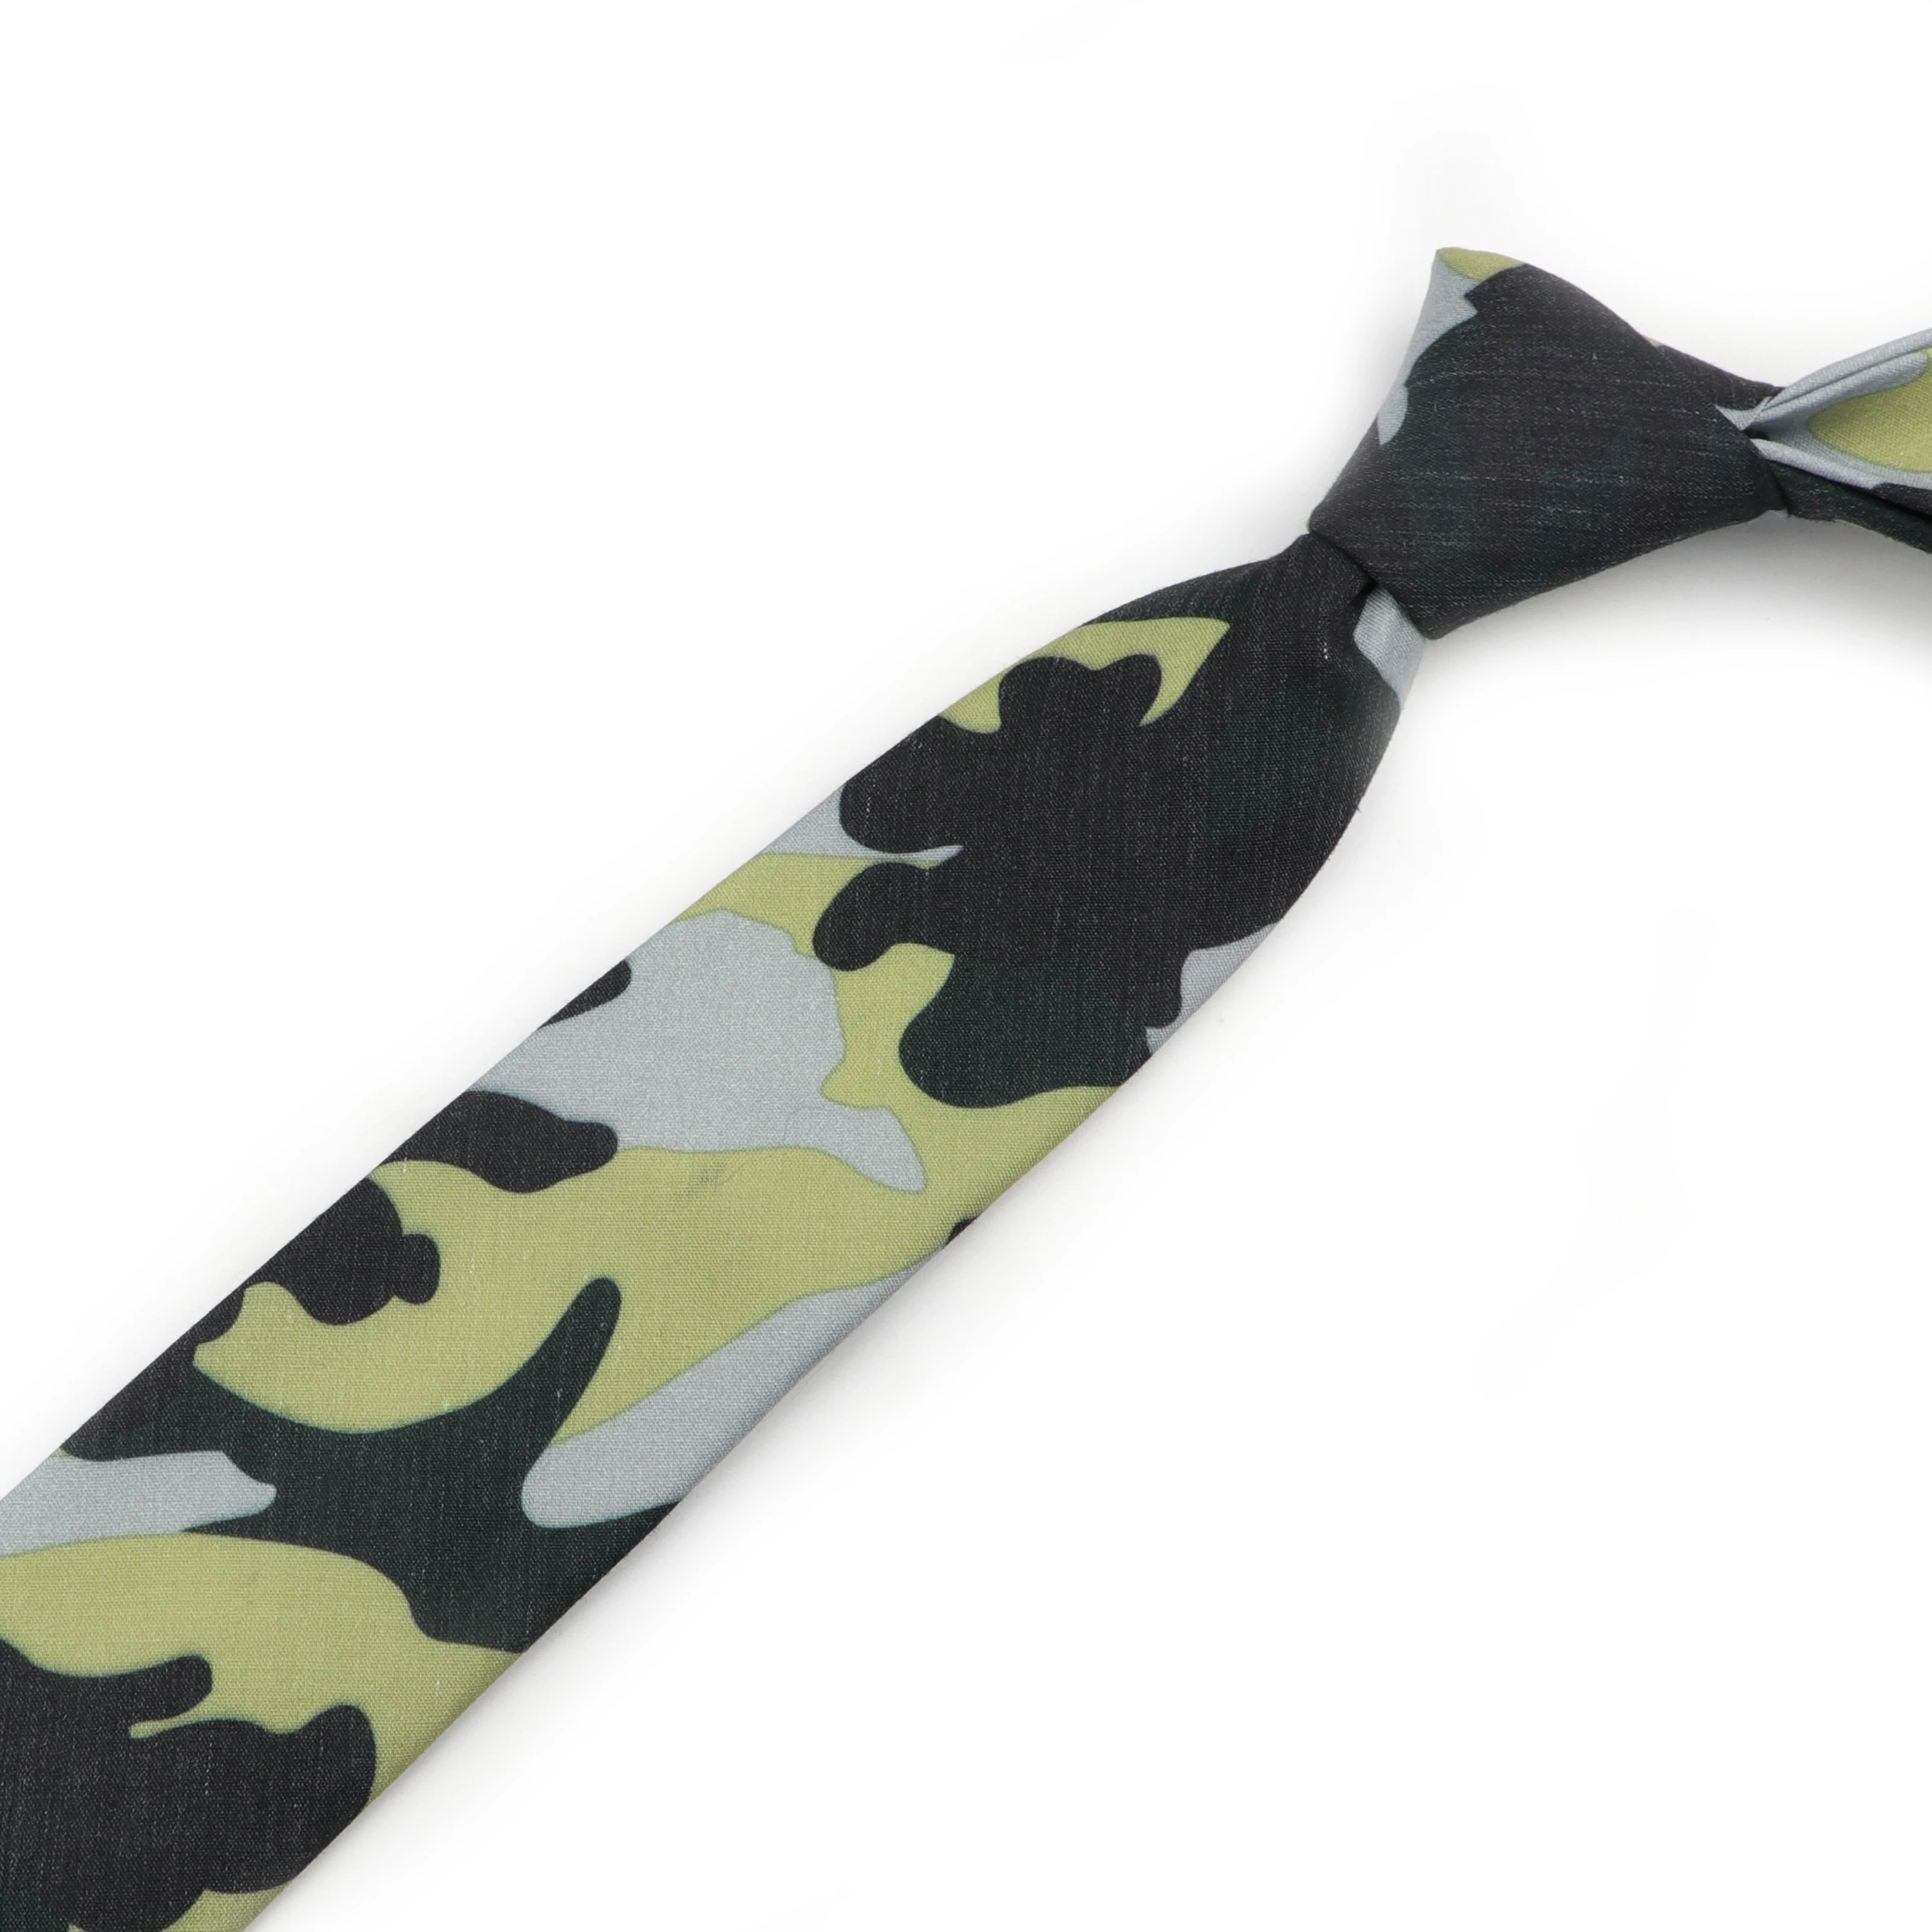 Мужской узкий галстук камуфляжной расцветки галстуки с узорами шириной 6 см